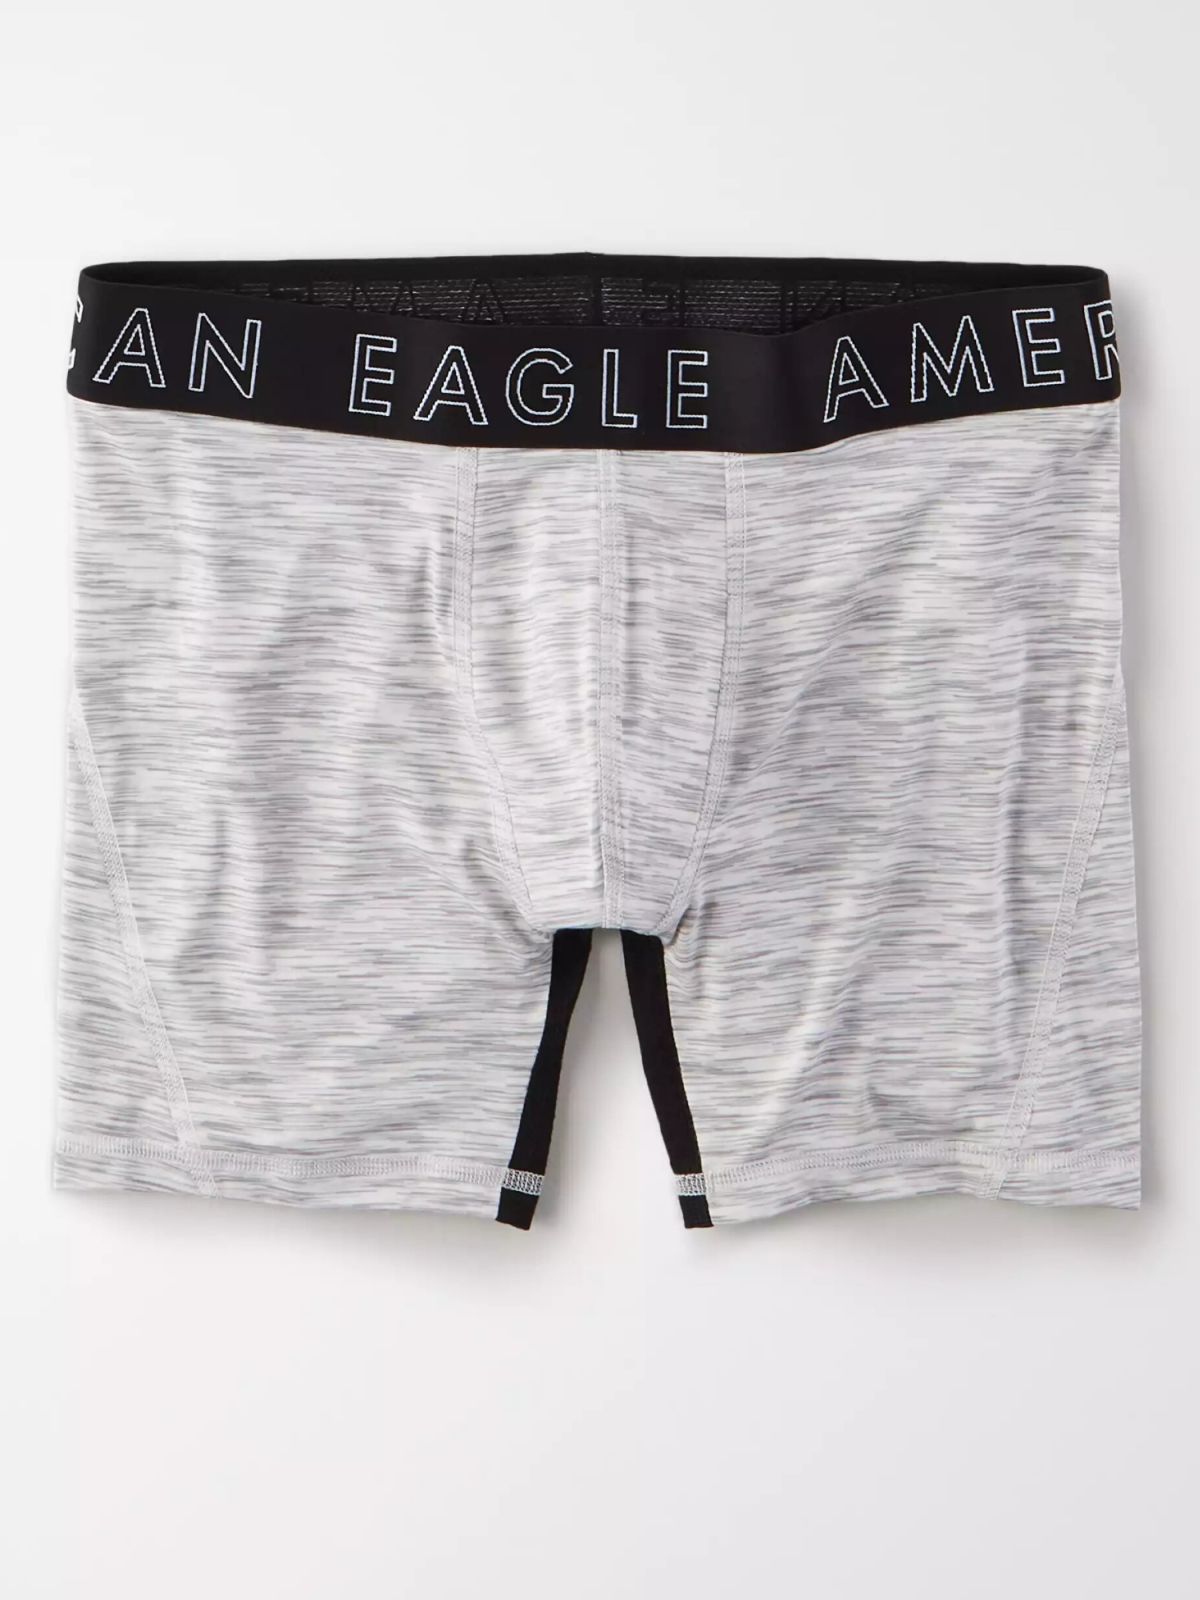  תחתוני בוקסר ג'רסי עם לוגו / גברים של AMERICAN EAGLE